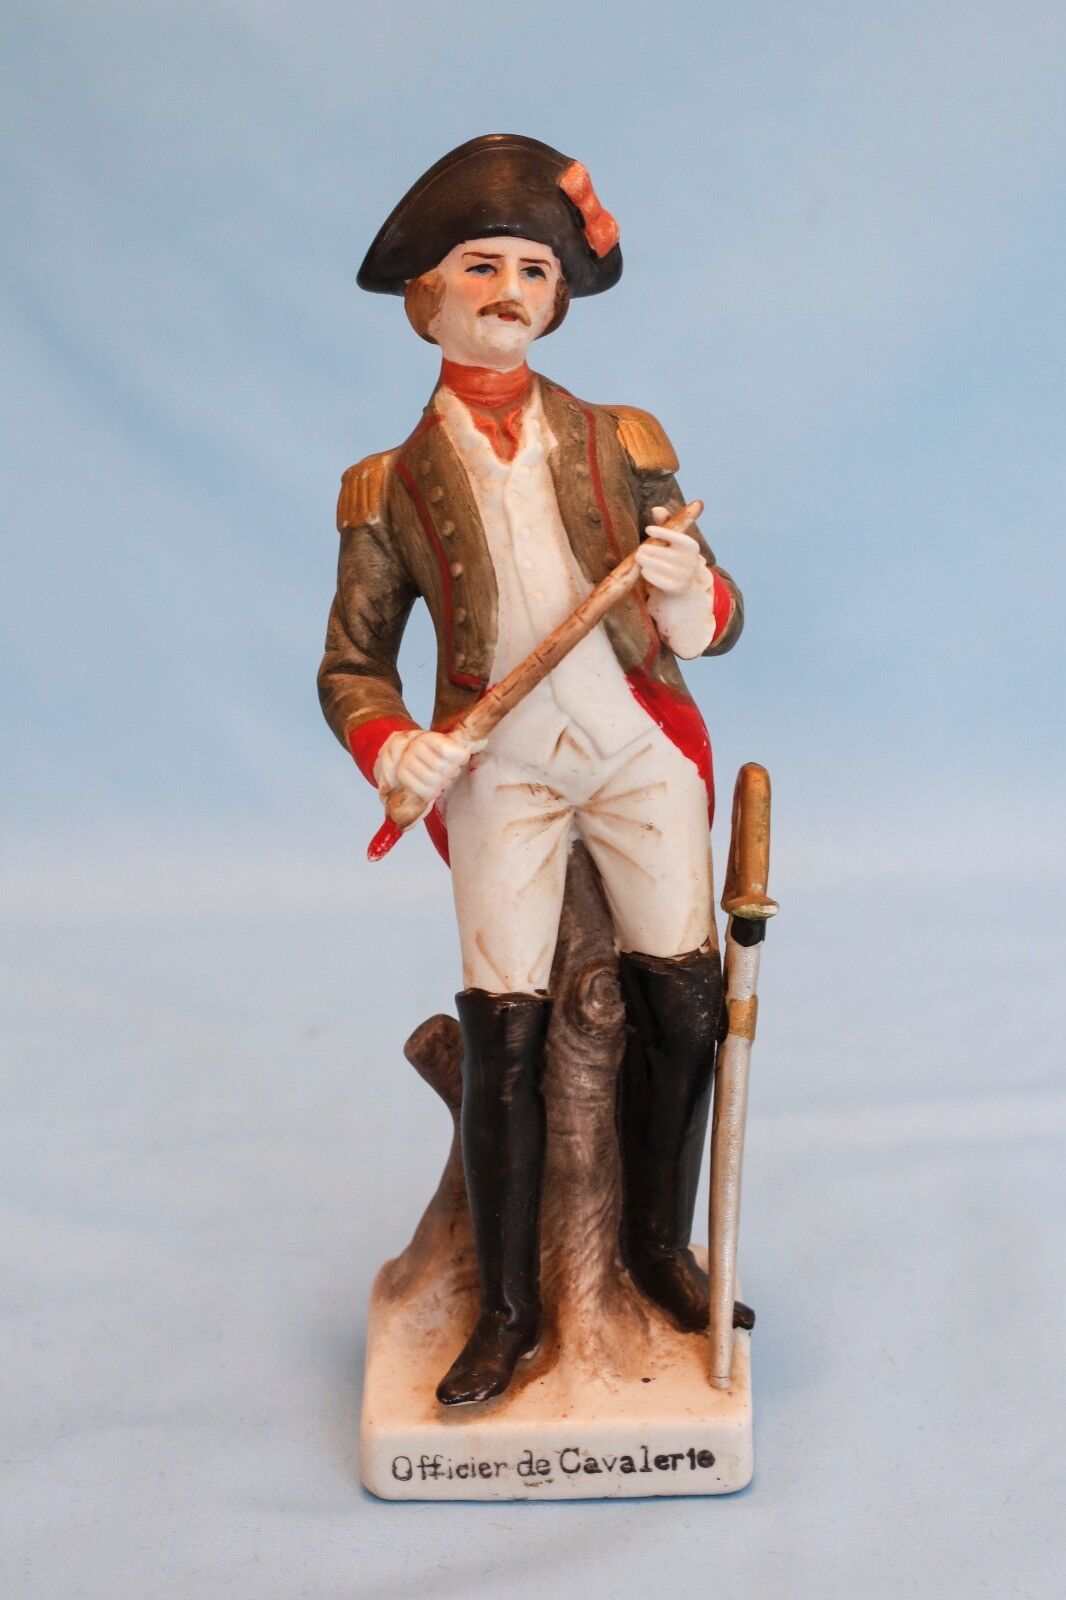 Vintage Porcelain American Revolution Soldier Figure